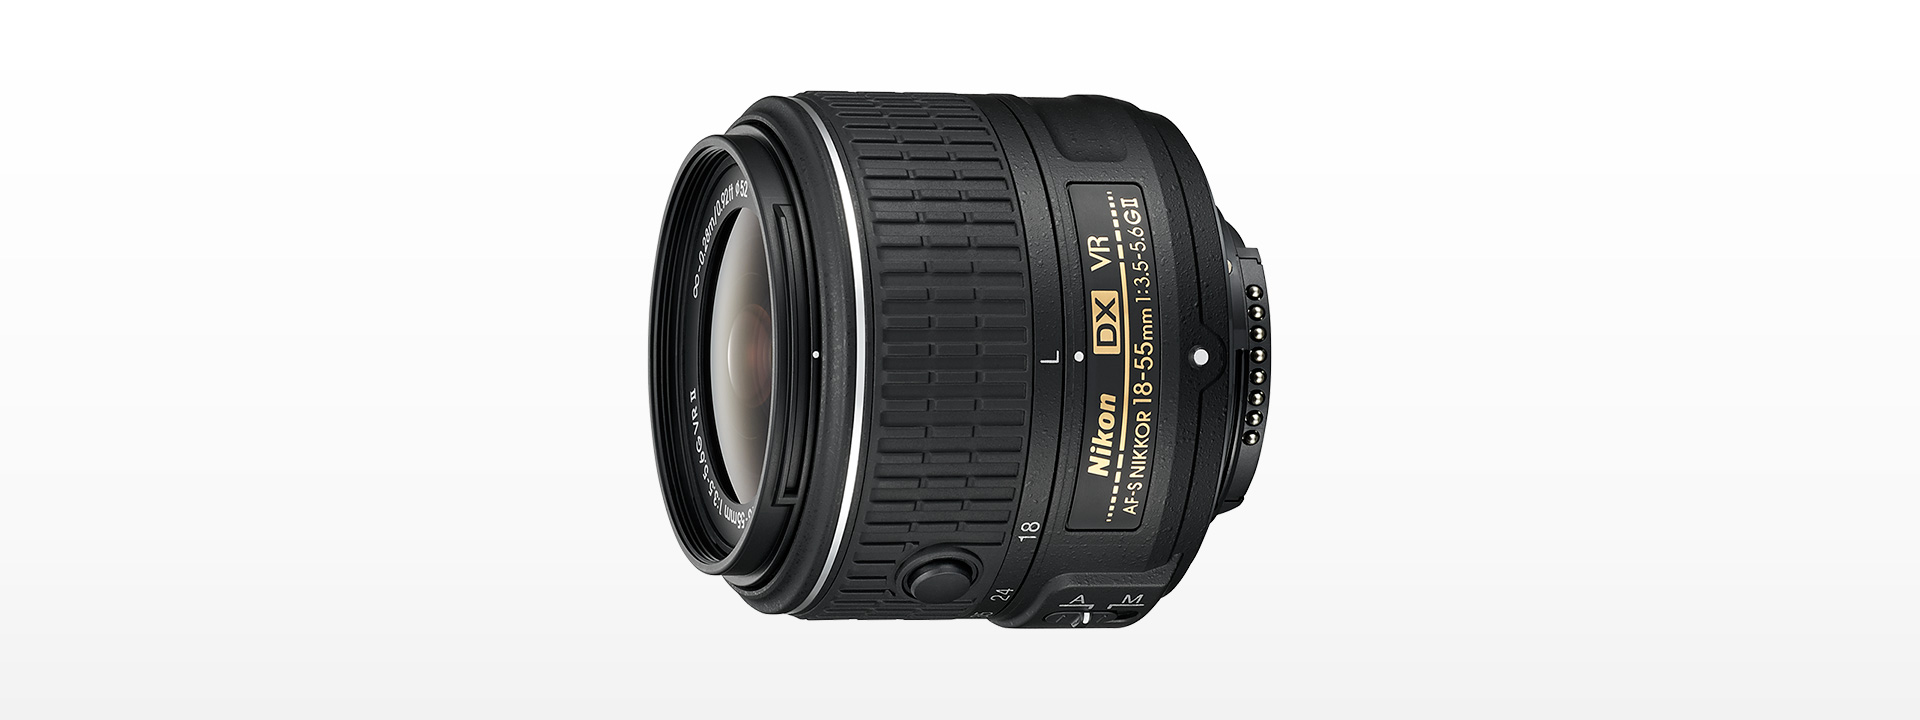 ブランド雑貨総合 11月15日限定価格✨【超美品】Nikon AF-S 18-55mm VR